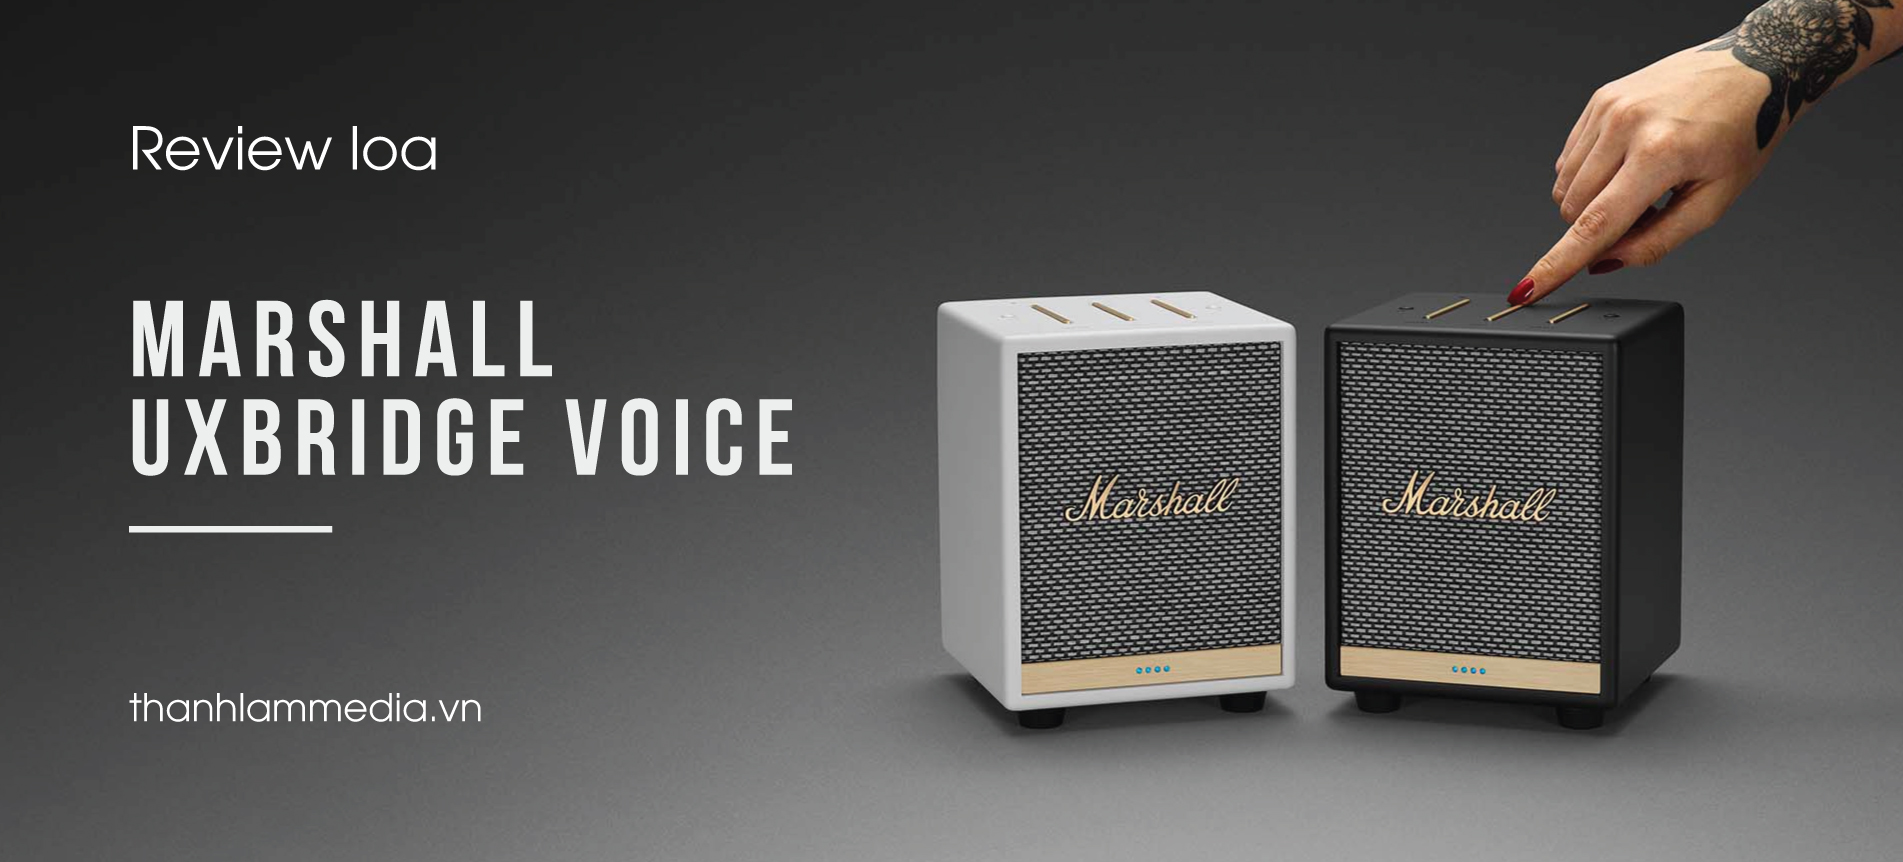 Review loa Marshall Uxbridge Voice - siêu nhỏ gọn, phong cách cực khác biệt 59